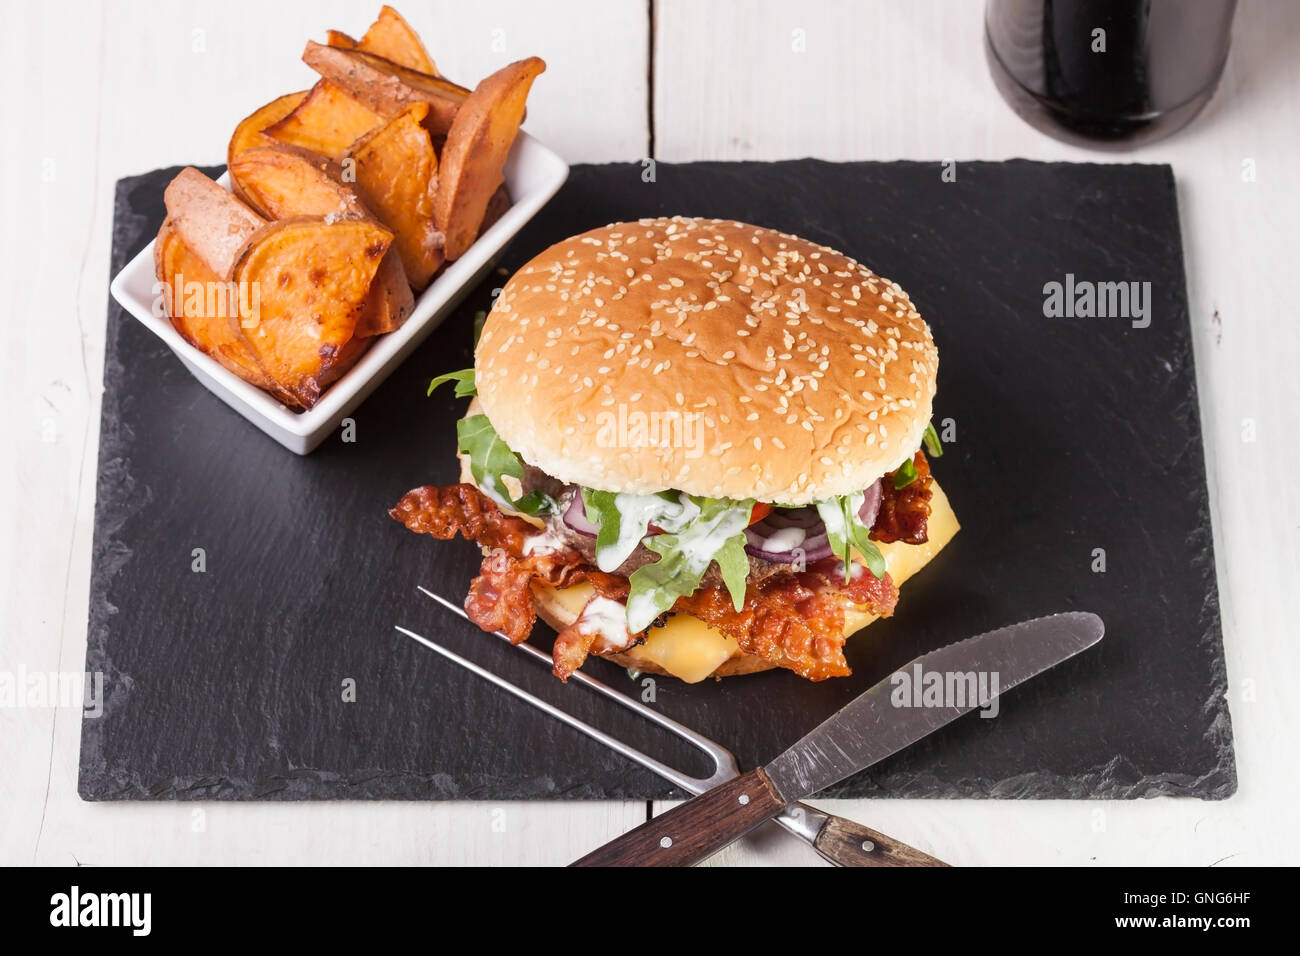 Gourmet home realizzati bacon cheeseburger su rustiche sfondi in legno Foto Stock